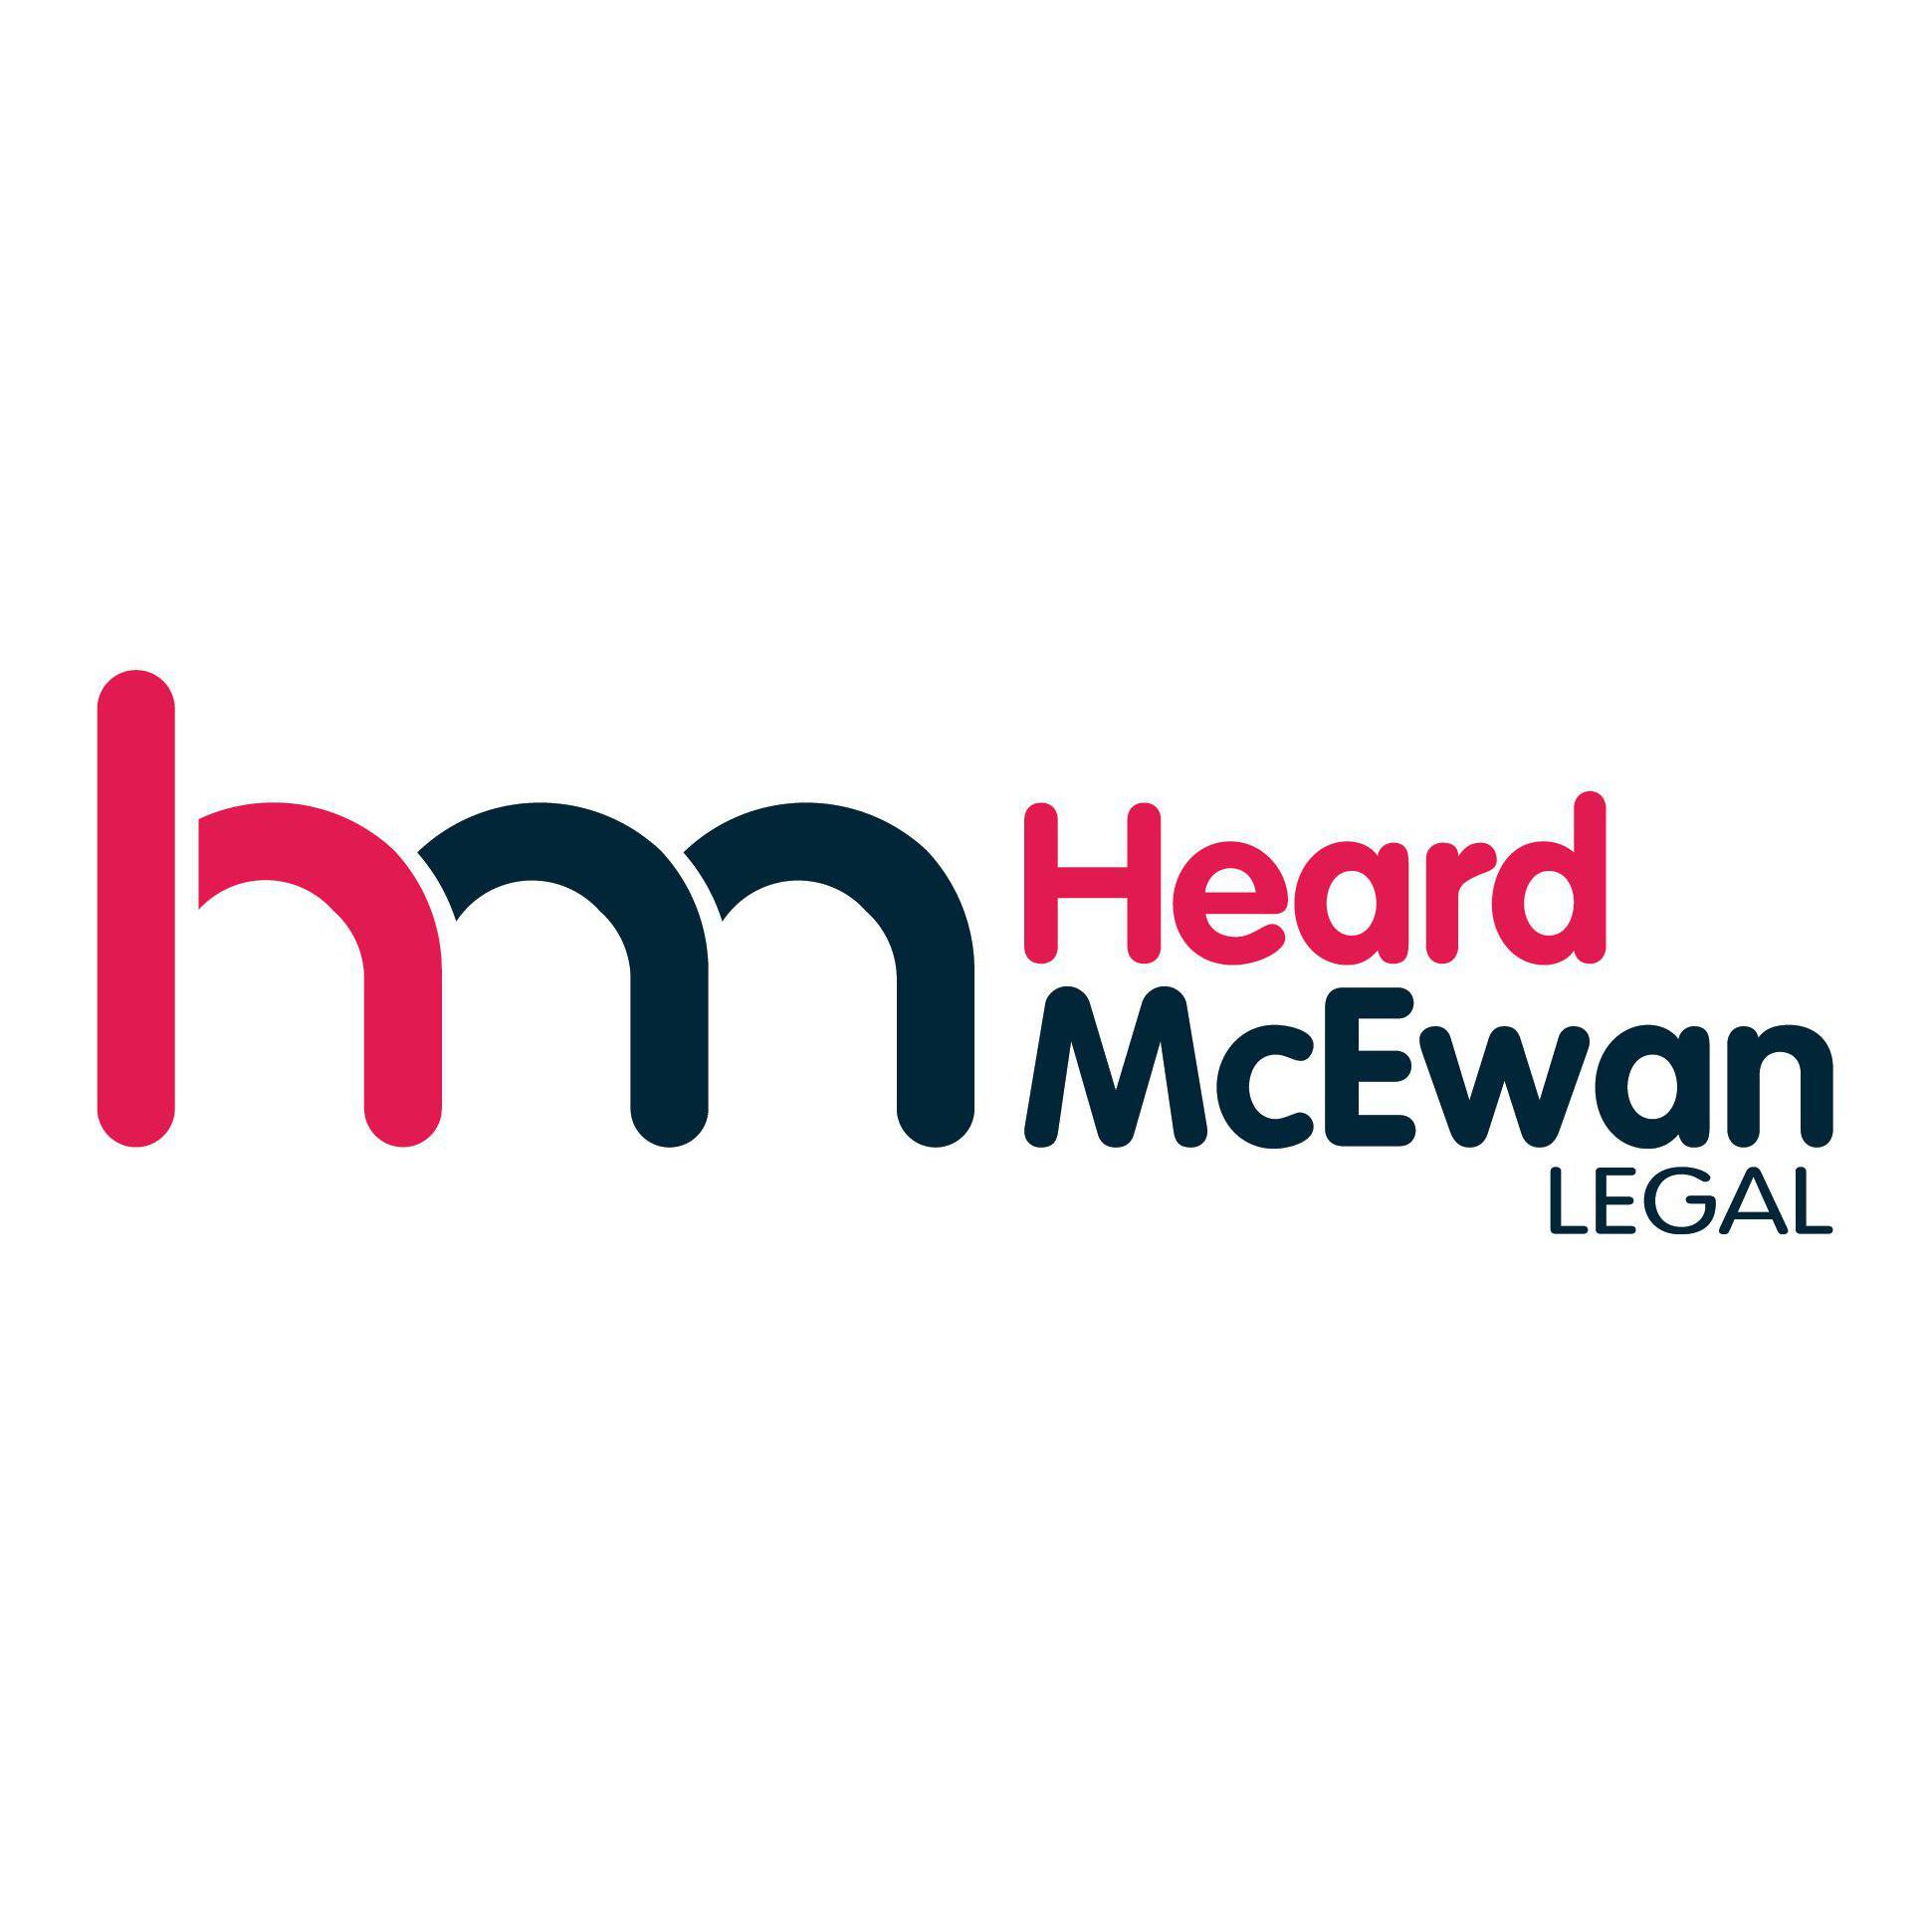 Heard McEwan Legal Logo